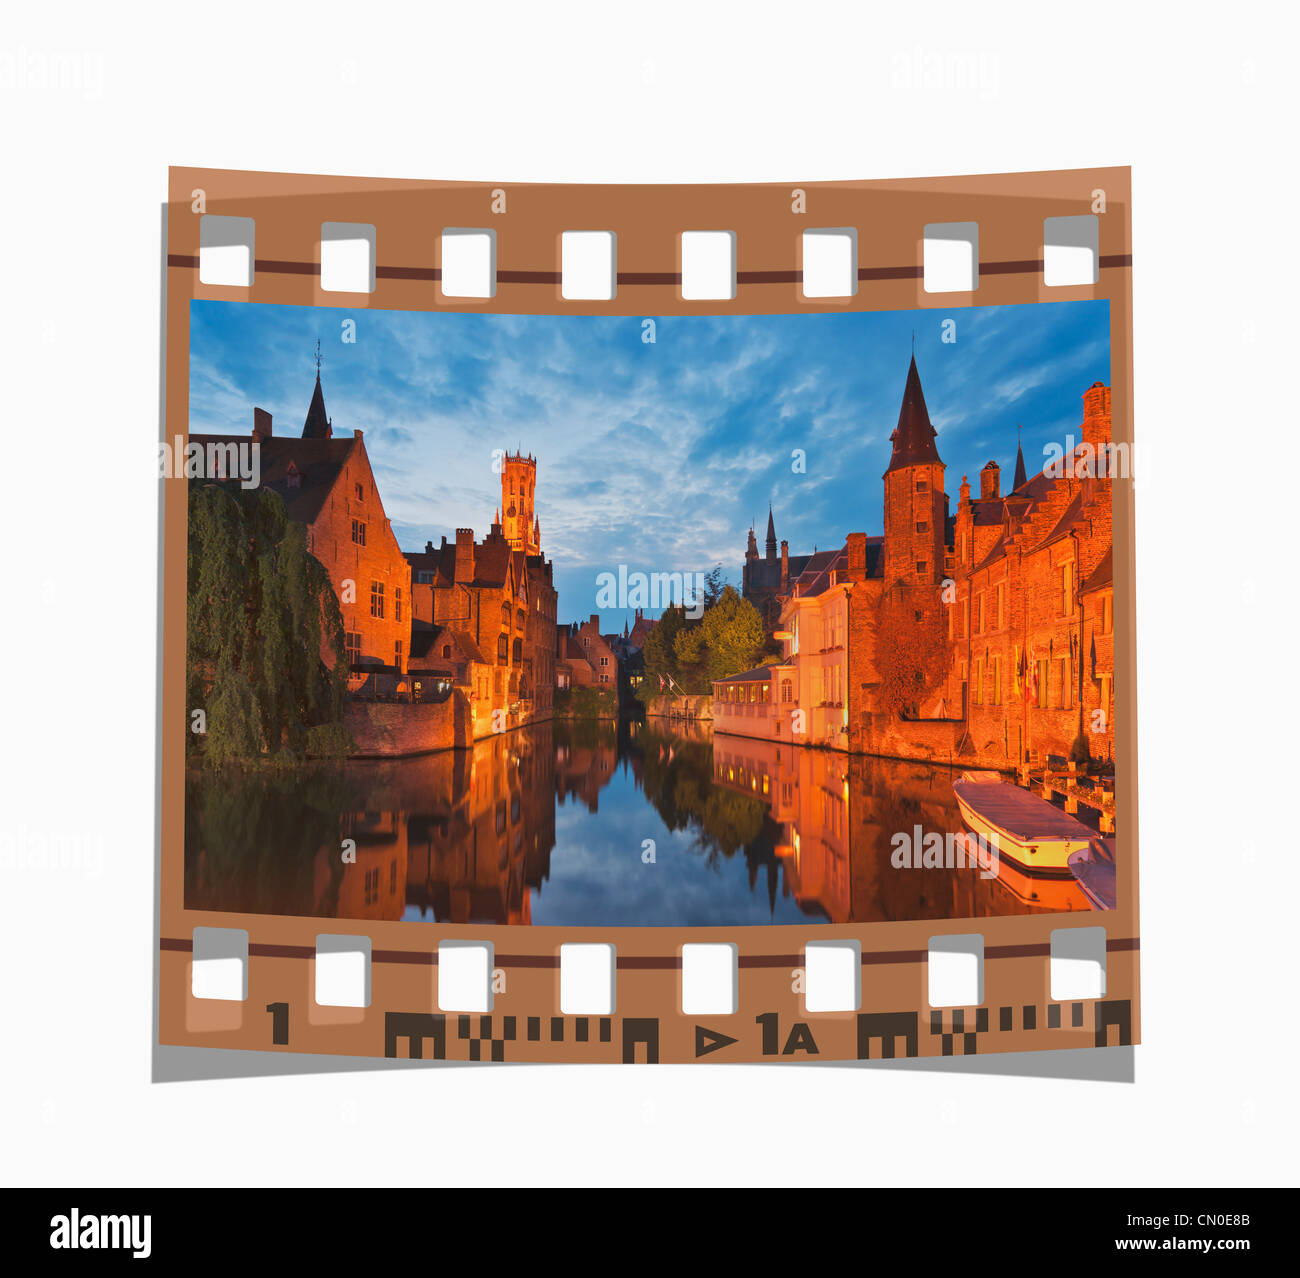 Film fixe : Vue de Rozenhoedkaai via la rivière Reie à beffroi, Bruges, Belgique, Europe Banque D'Images